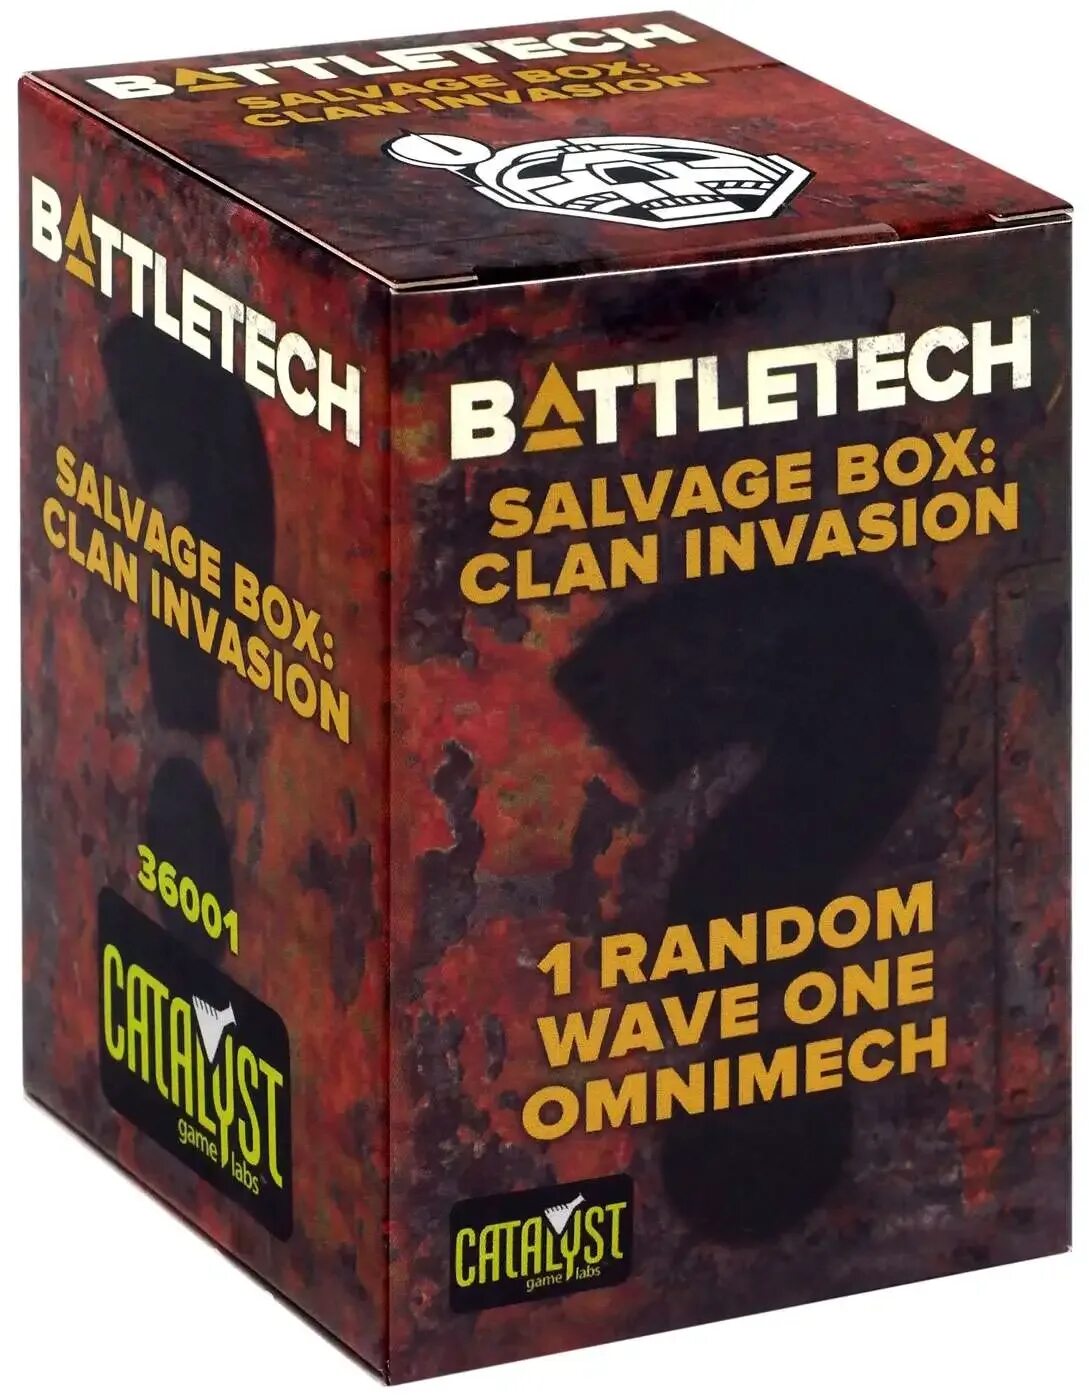 Clan invasion. Battletech Clan Invasion. Battletech: Clan Invasion salvage Box - 93 Designs. Clan Command Star. Scryre Clan Box.